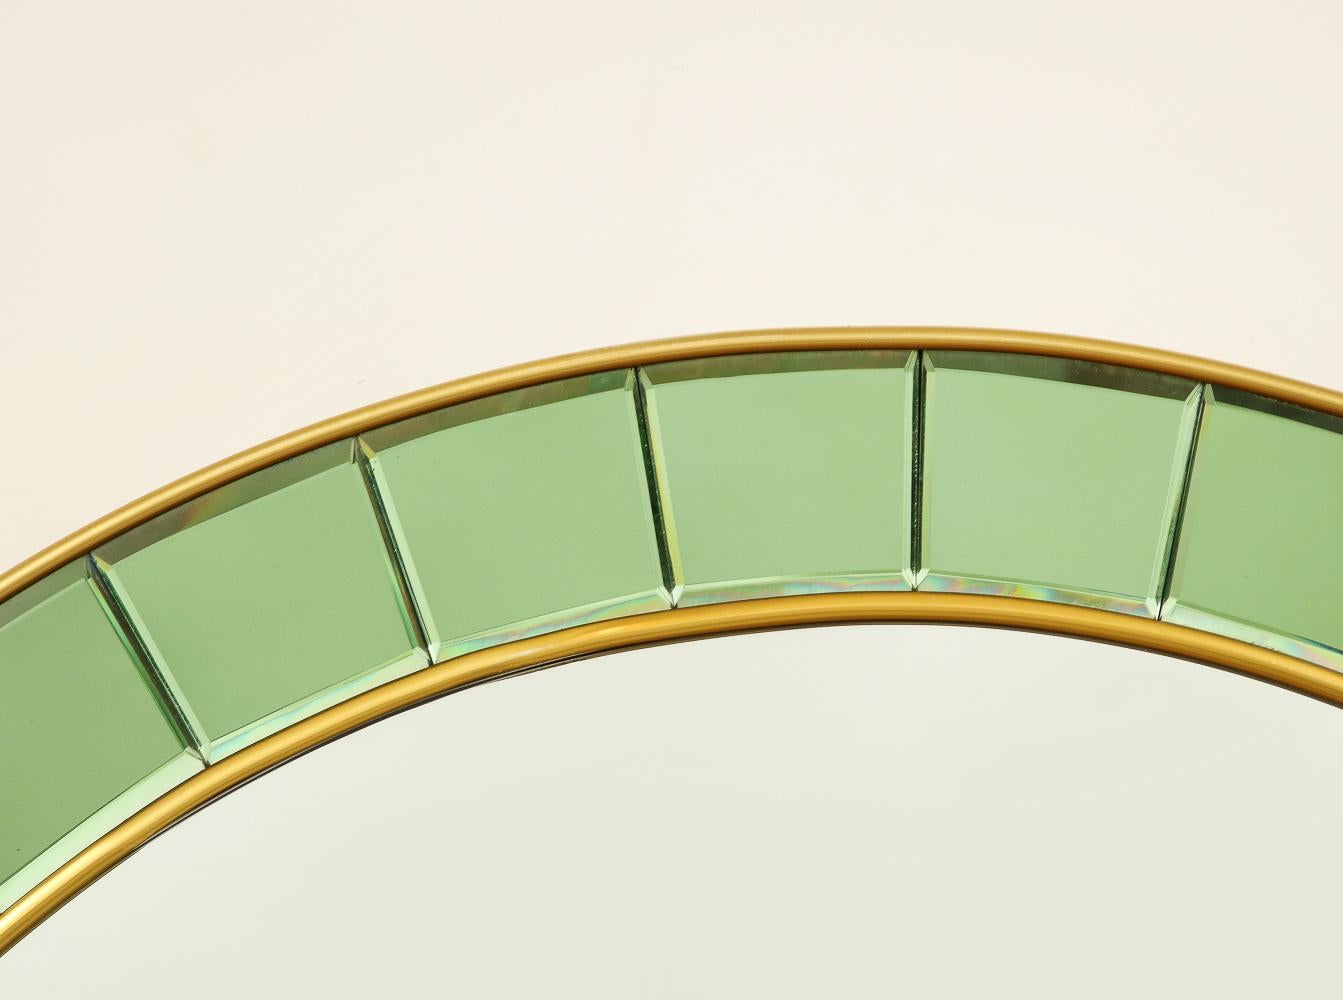 Laiton, miroir, carreaux de verre verts. Elegant miroir mural avec des carreaux de verre vert tendre entourant un miroir circulaire central, et une garniture en laiton.